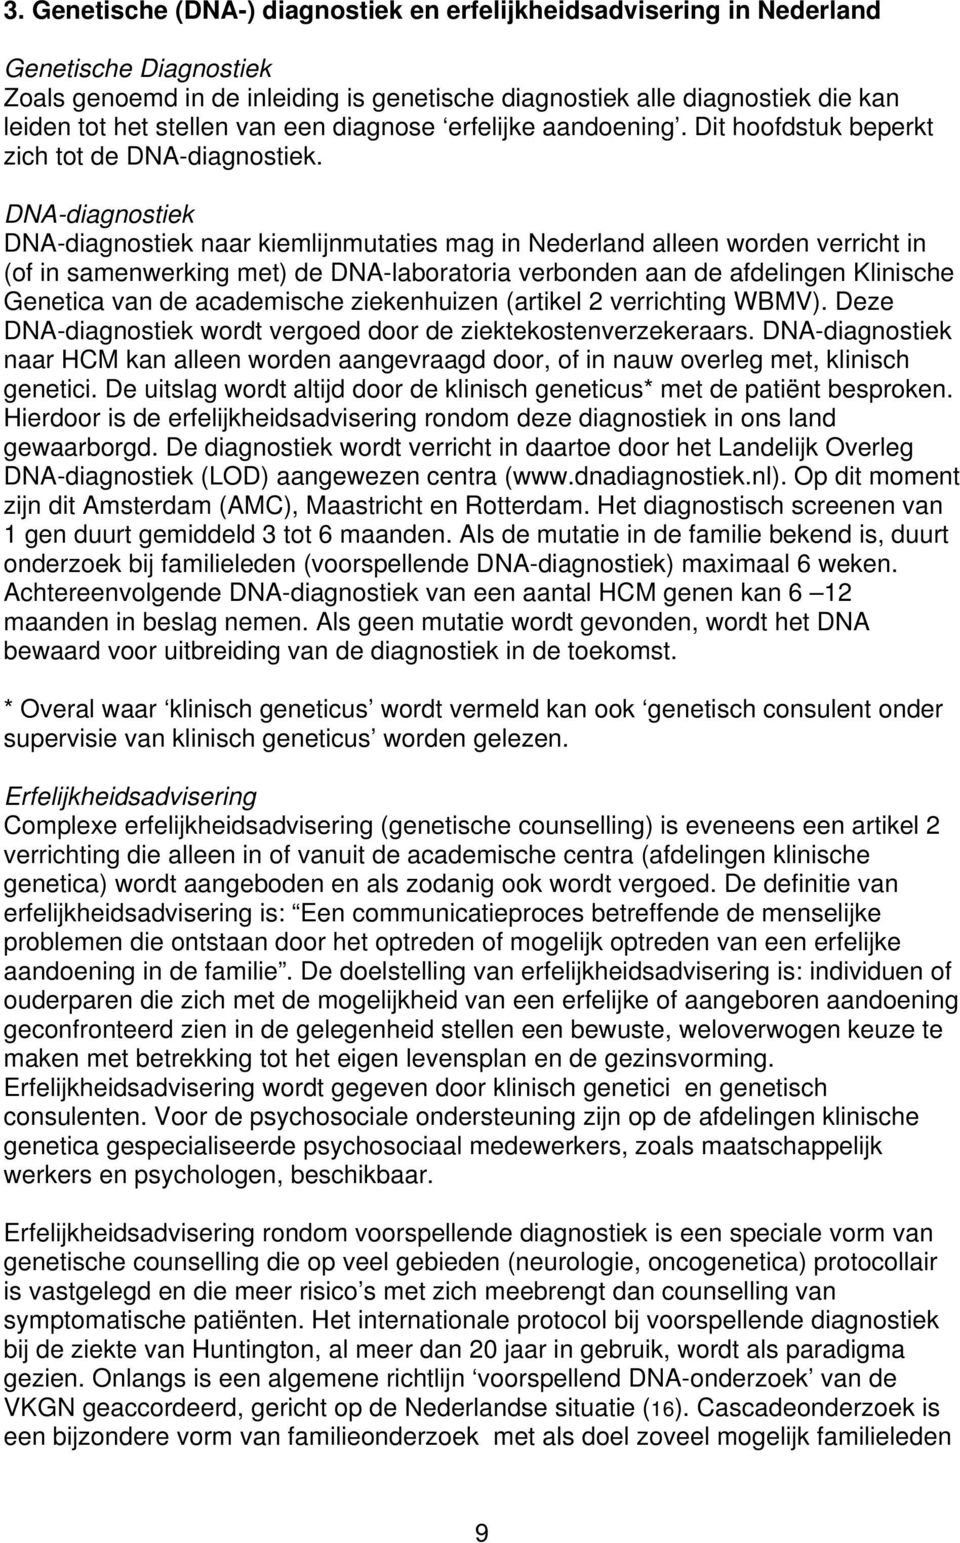 DNA-diagnostiek DNA-diagnostiek naar kiemlijnmutaties mag in Nederland alleen worden verricht in (of in samenwerking met) de DNA-laboratoria verbonden aan de afdelingen Klinische Genetica van de